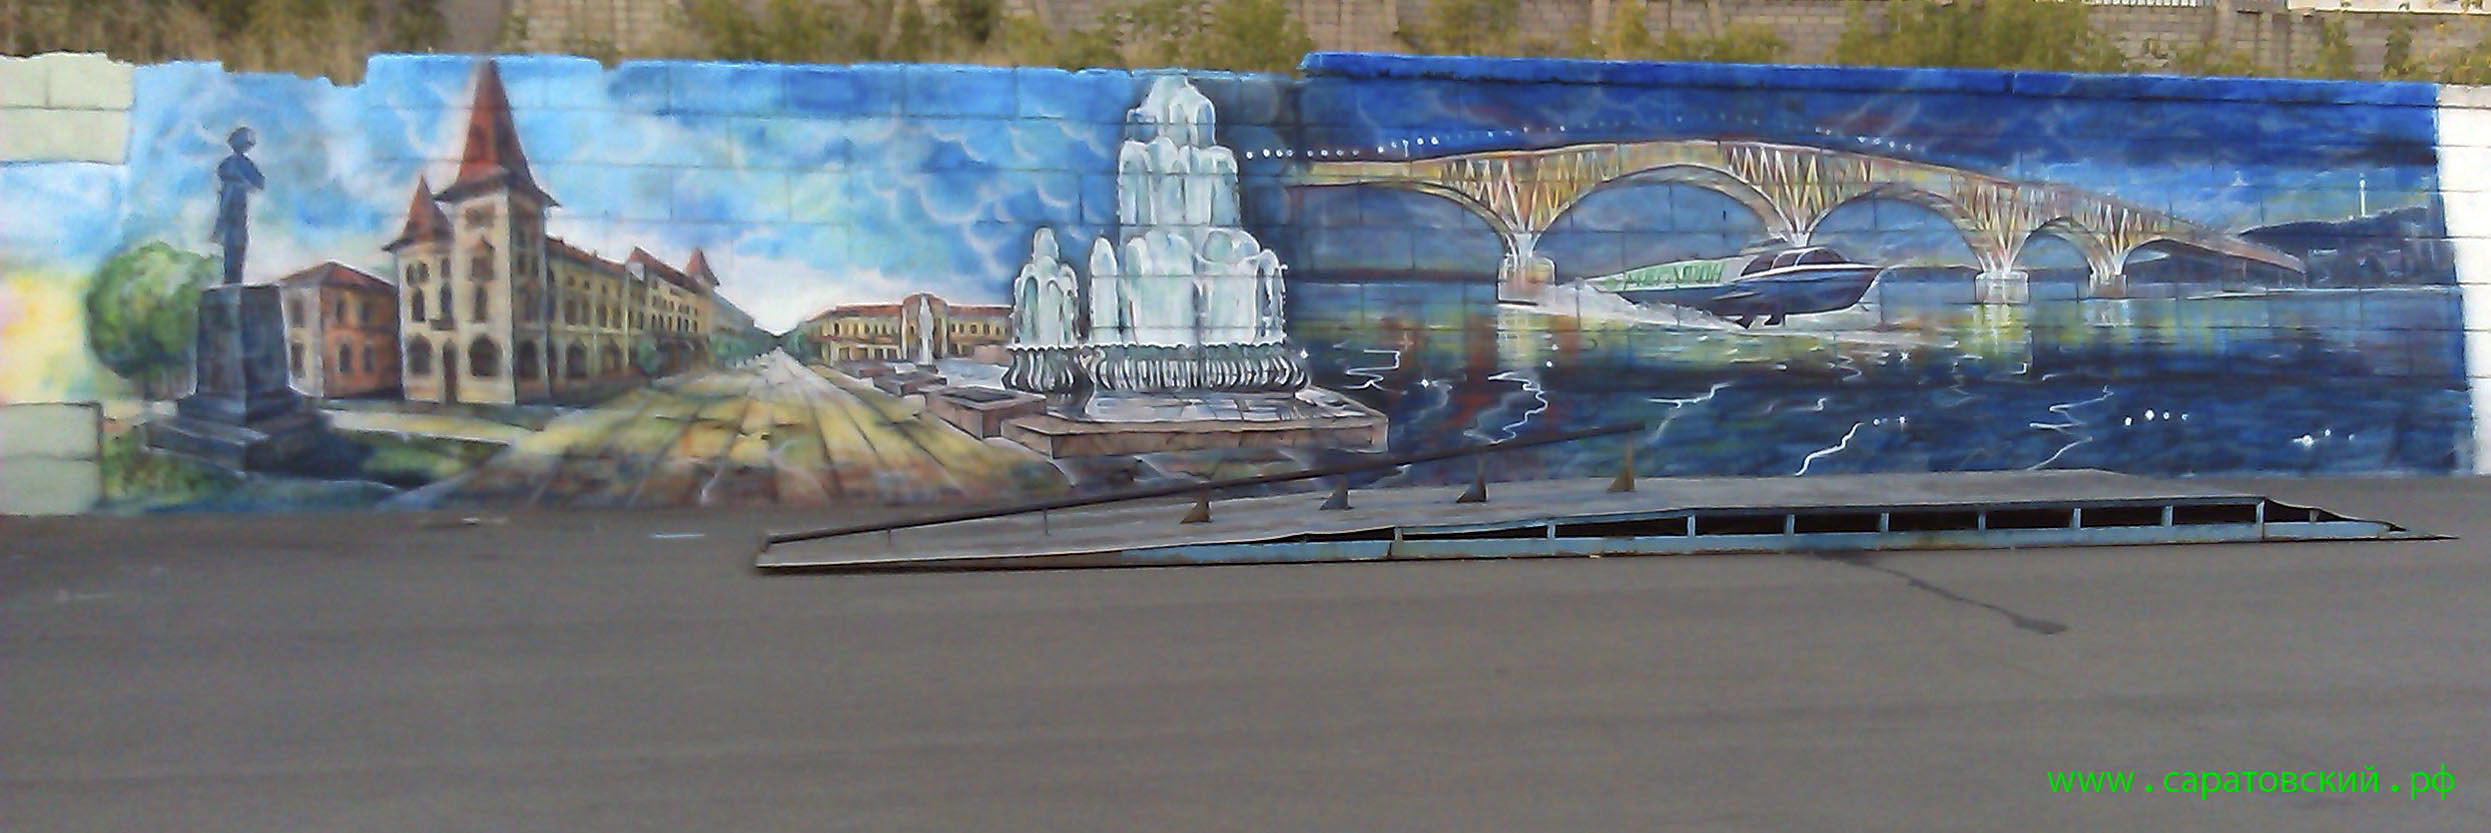 Саратовская набережная, граффити: саратовский арбат и мост через Волгу